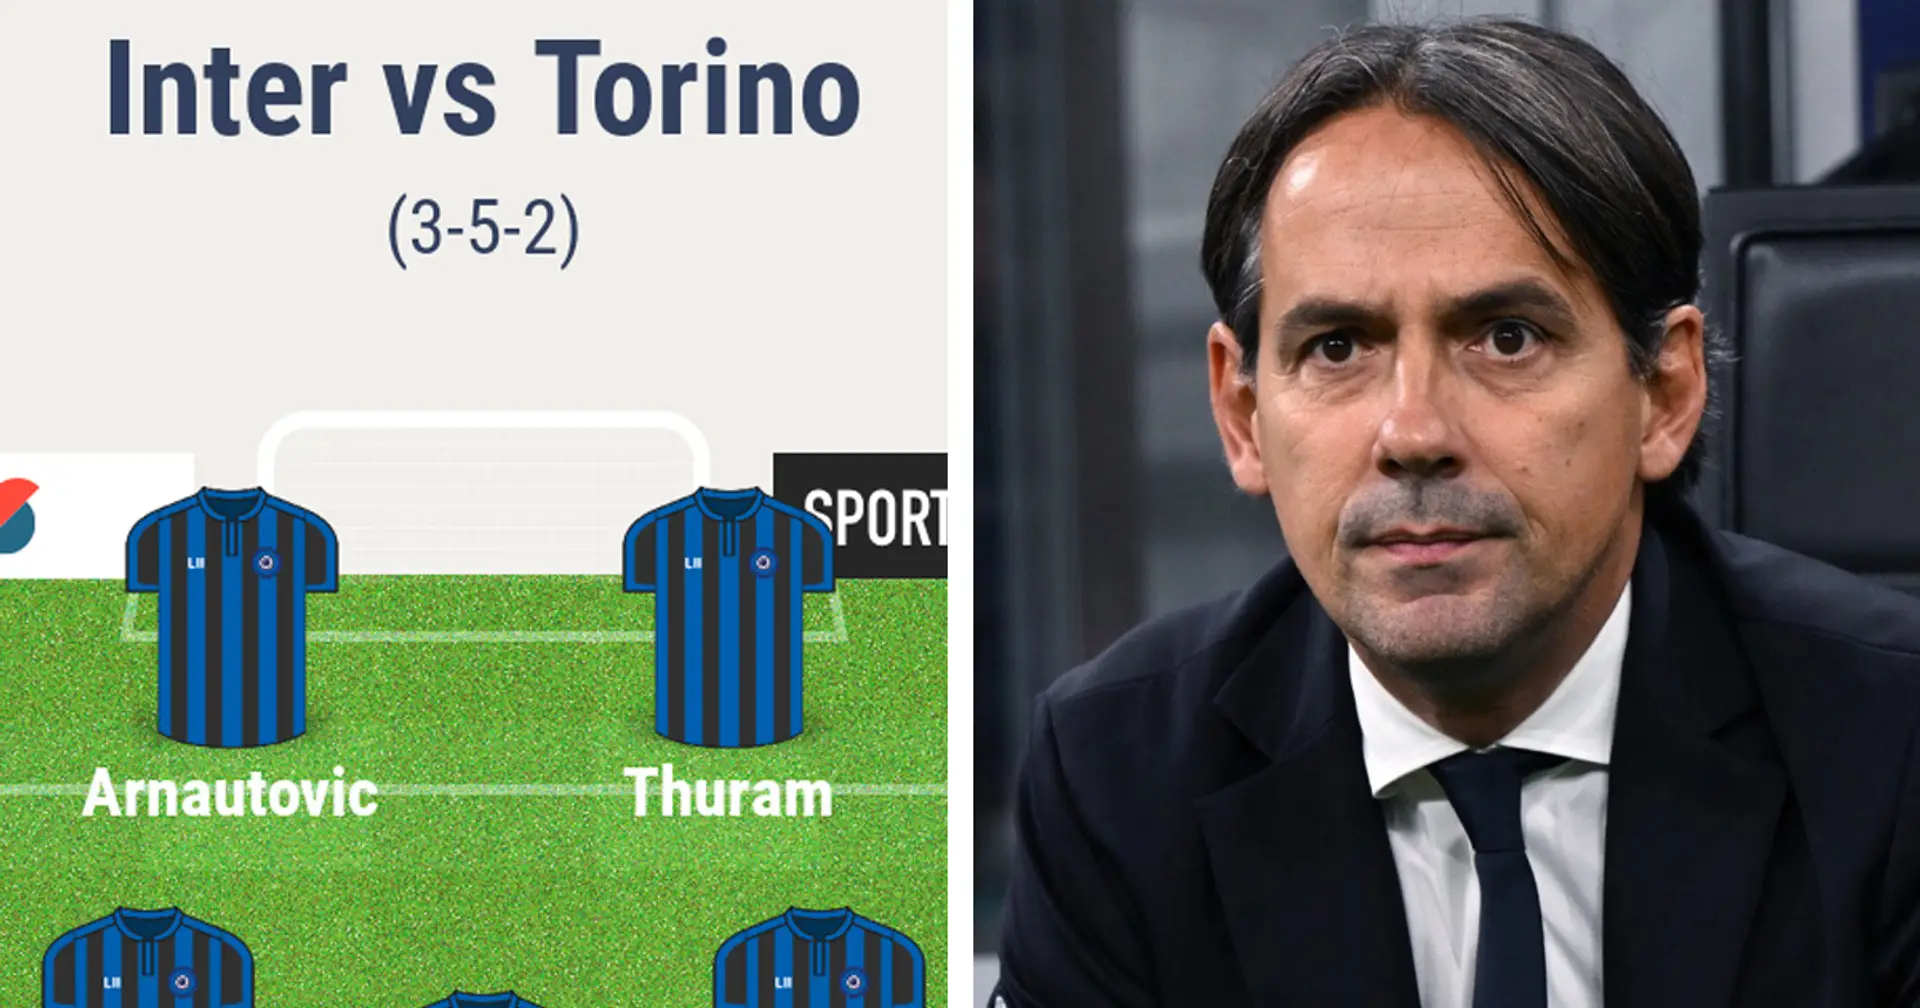 Almeno 4 cambi, e 1 possibile novità assoluta: Inzaghi prepara il turnover per Inter-Torino